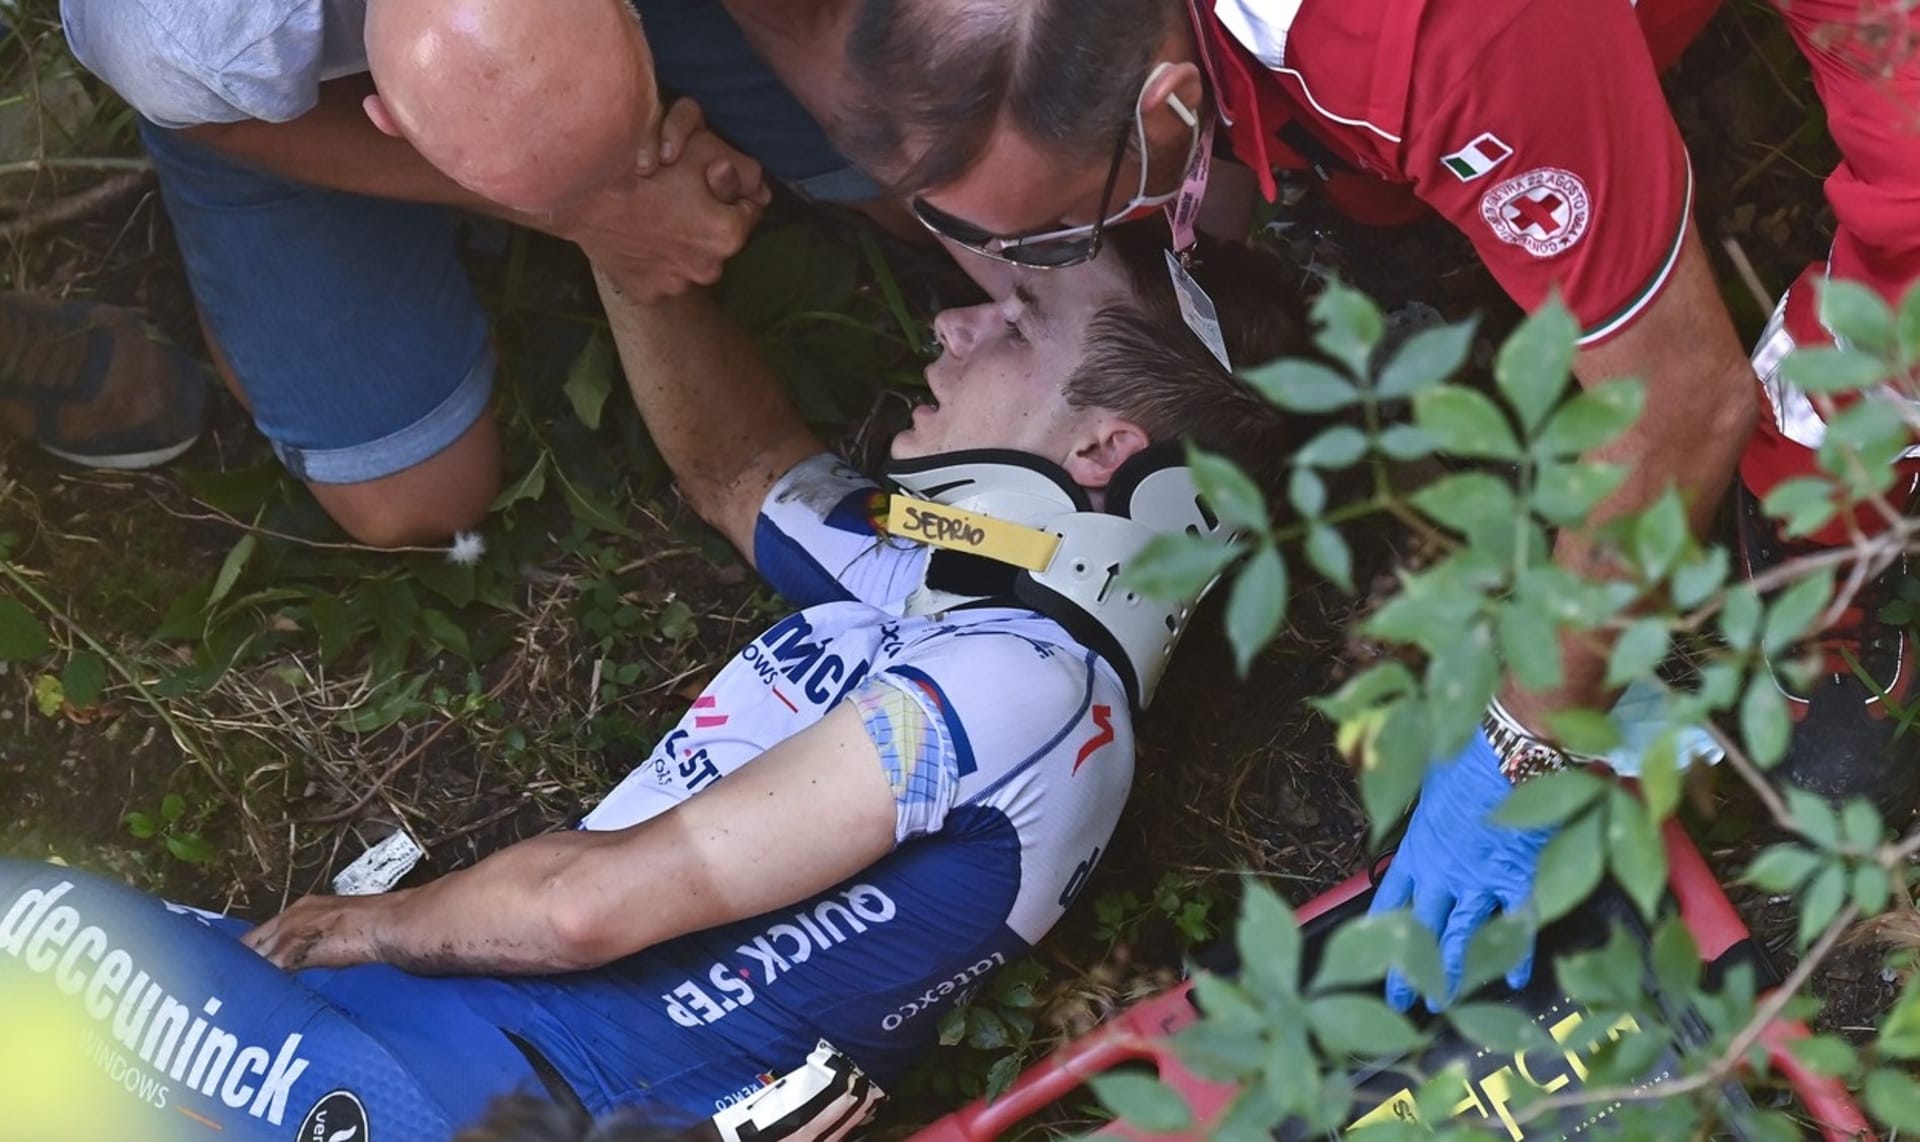 Cyklista Remco Evenepoel krátce po vážném pádu na závodě Kolem Lombardie